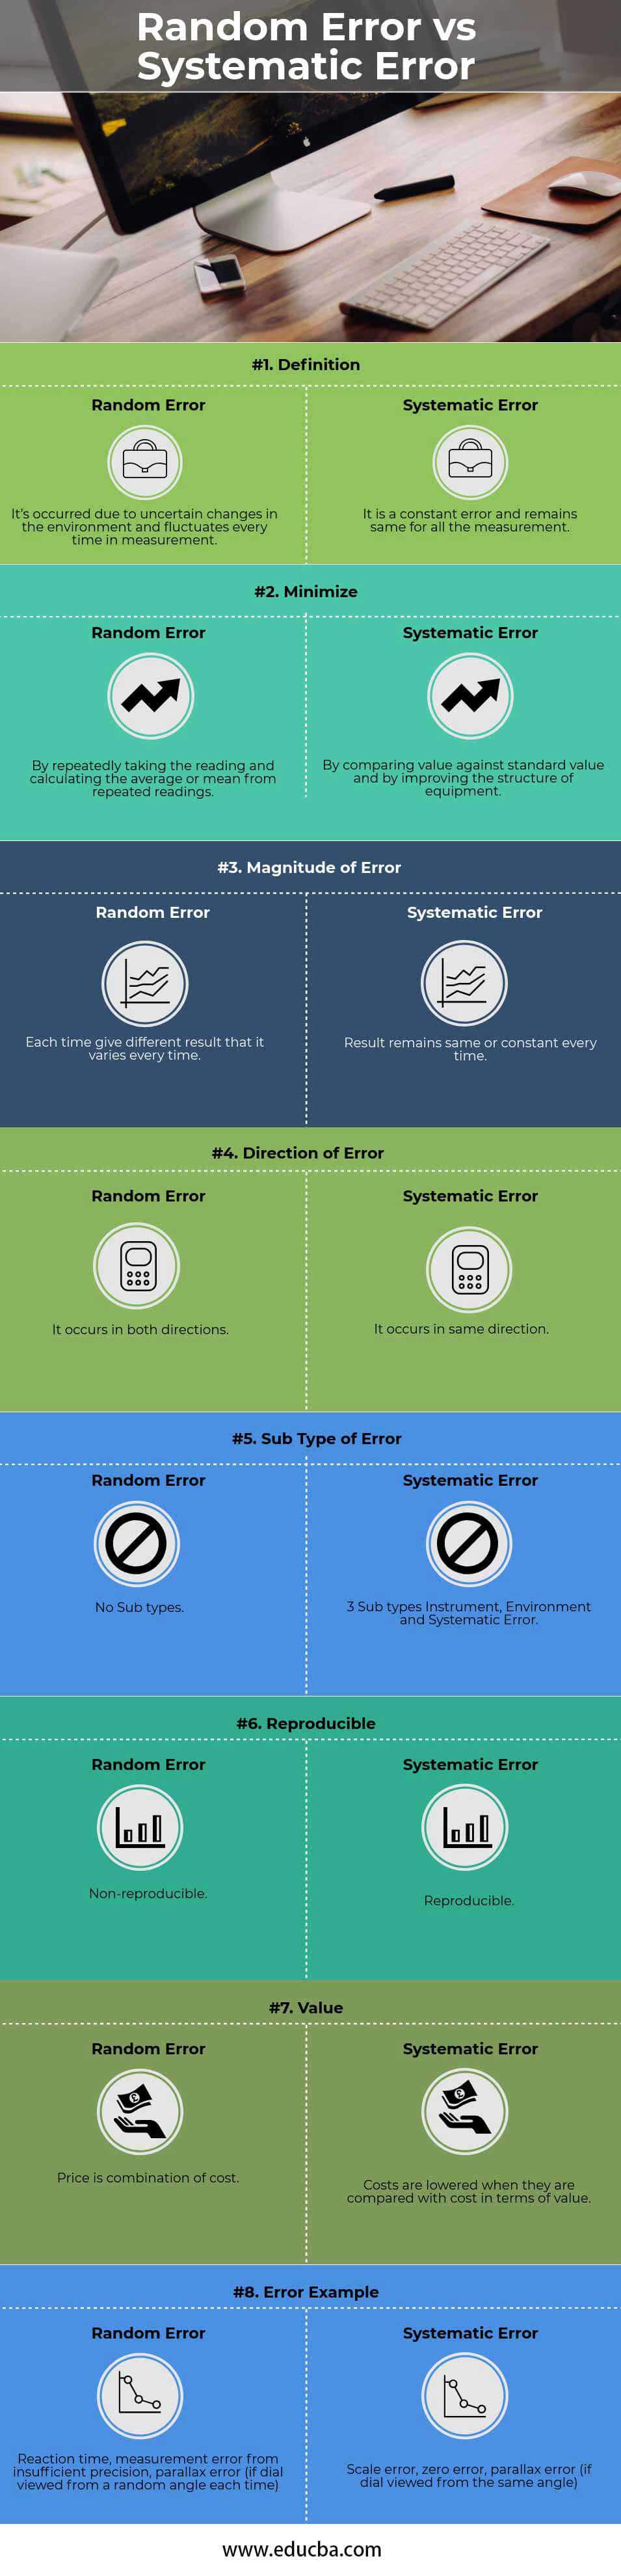 Random Error vs Systematic Error (info)